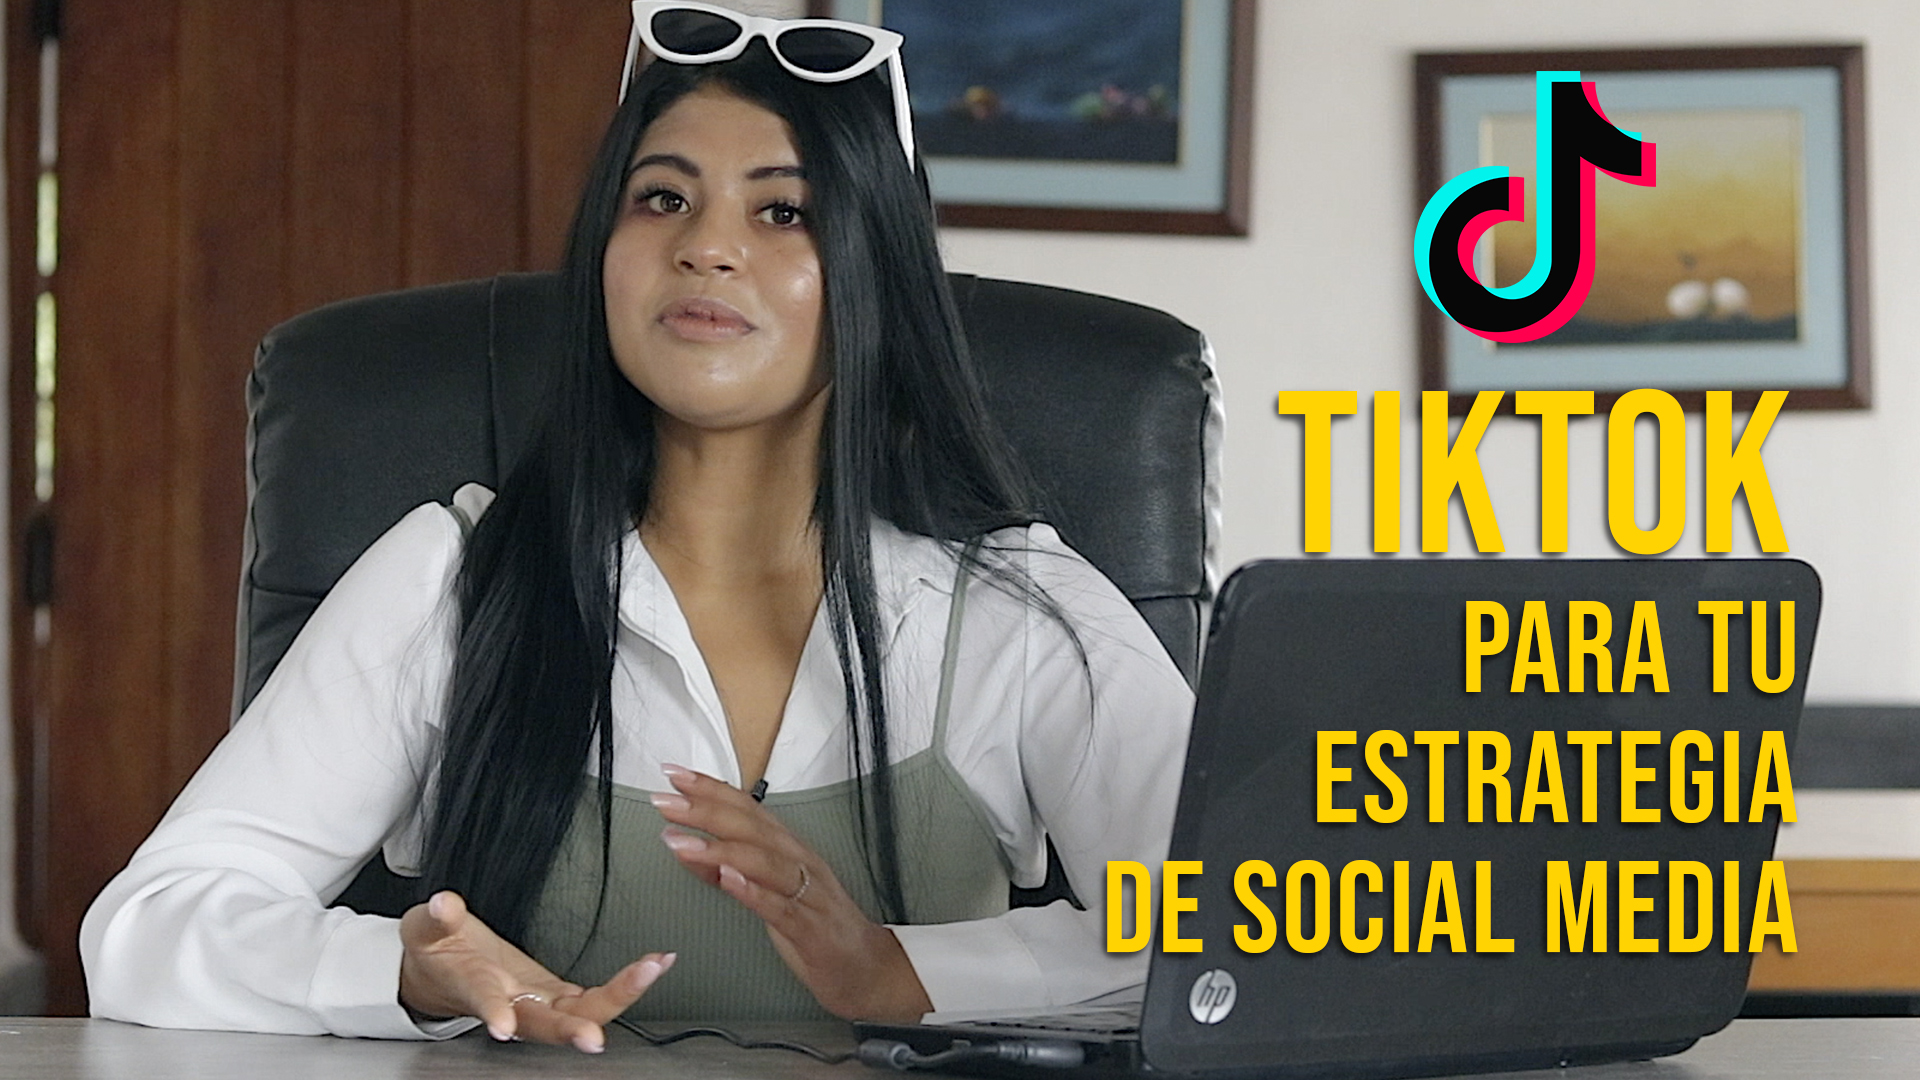 TikTok Como Estrategia de Social Media